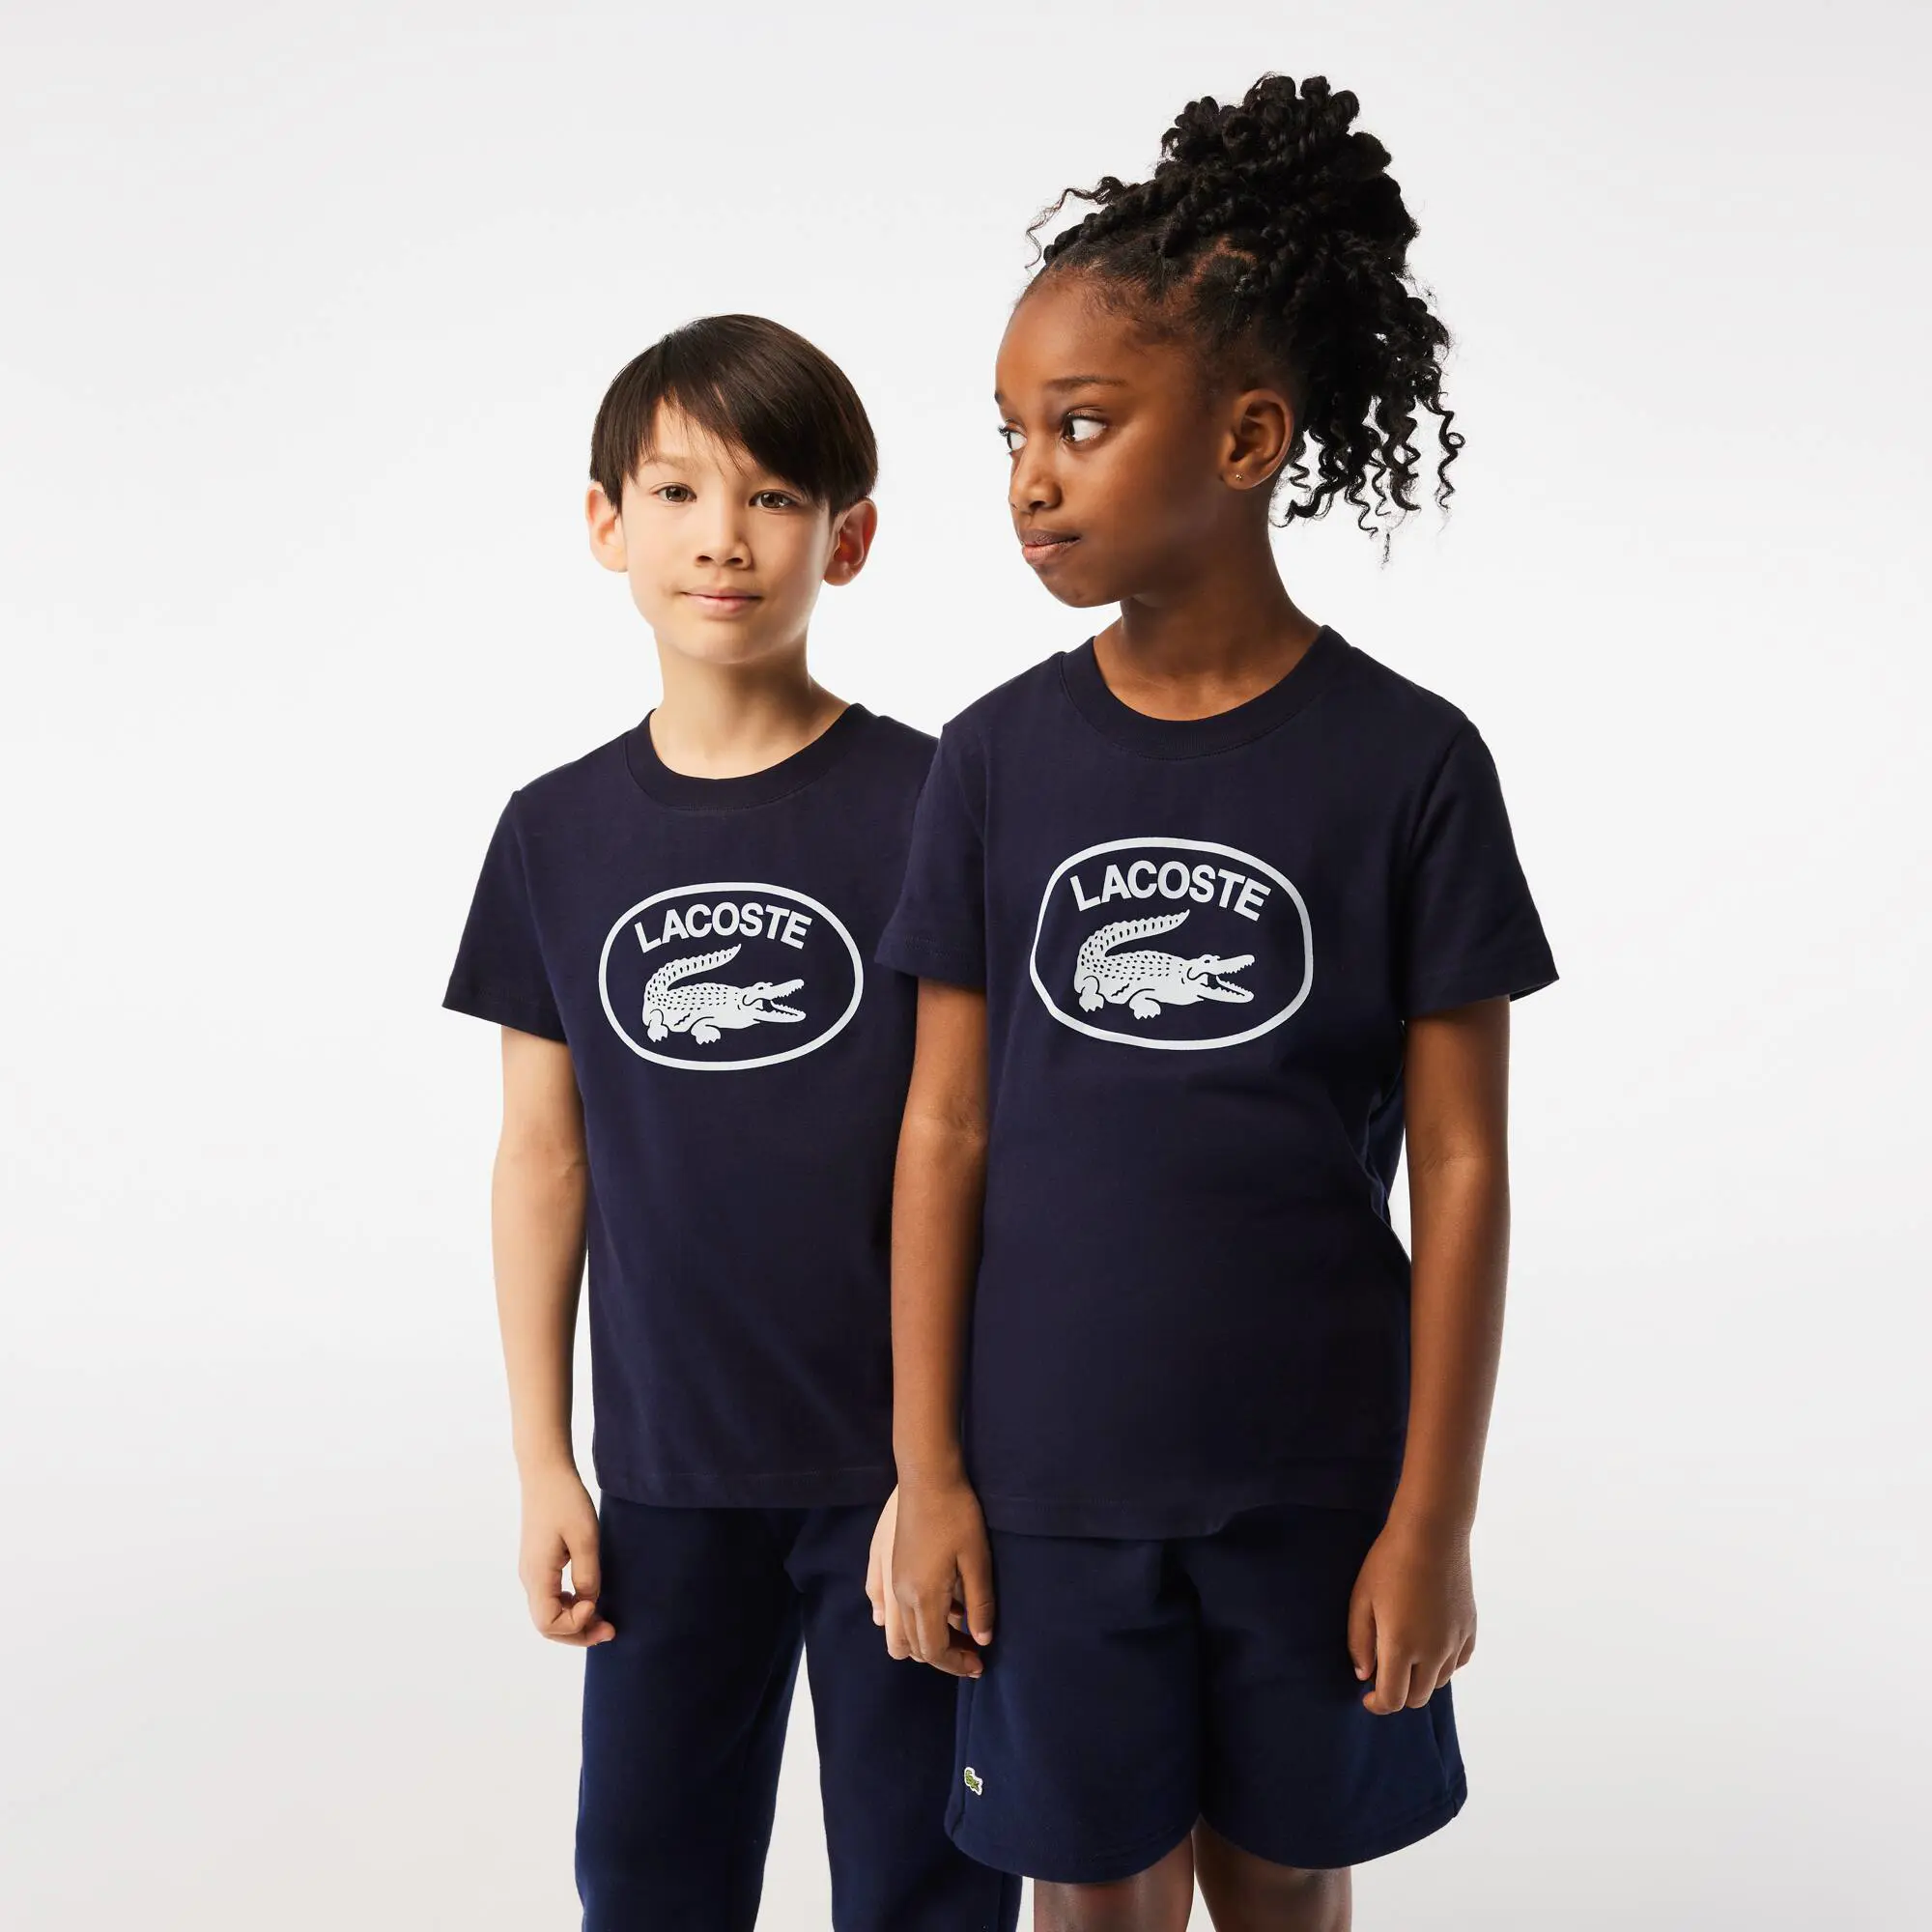 Lacoste Camiseta de niño Lacoste en tejido de punto de algodón con detalles de la marca a contraste. 1